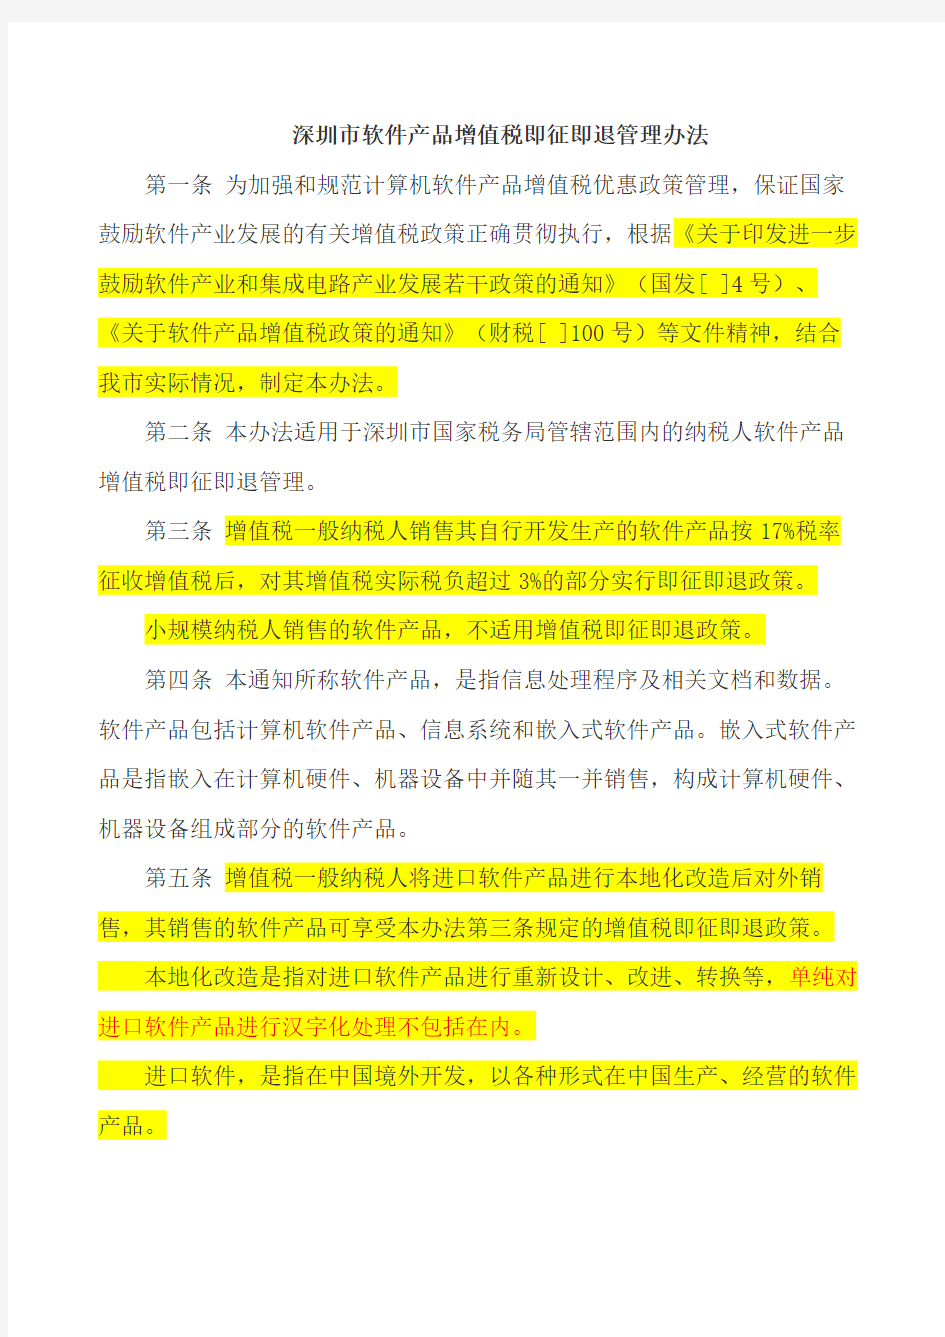 深圳市软件产品增值税即征即退管理办法